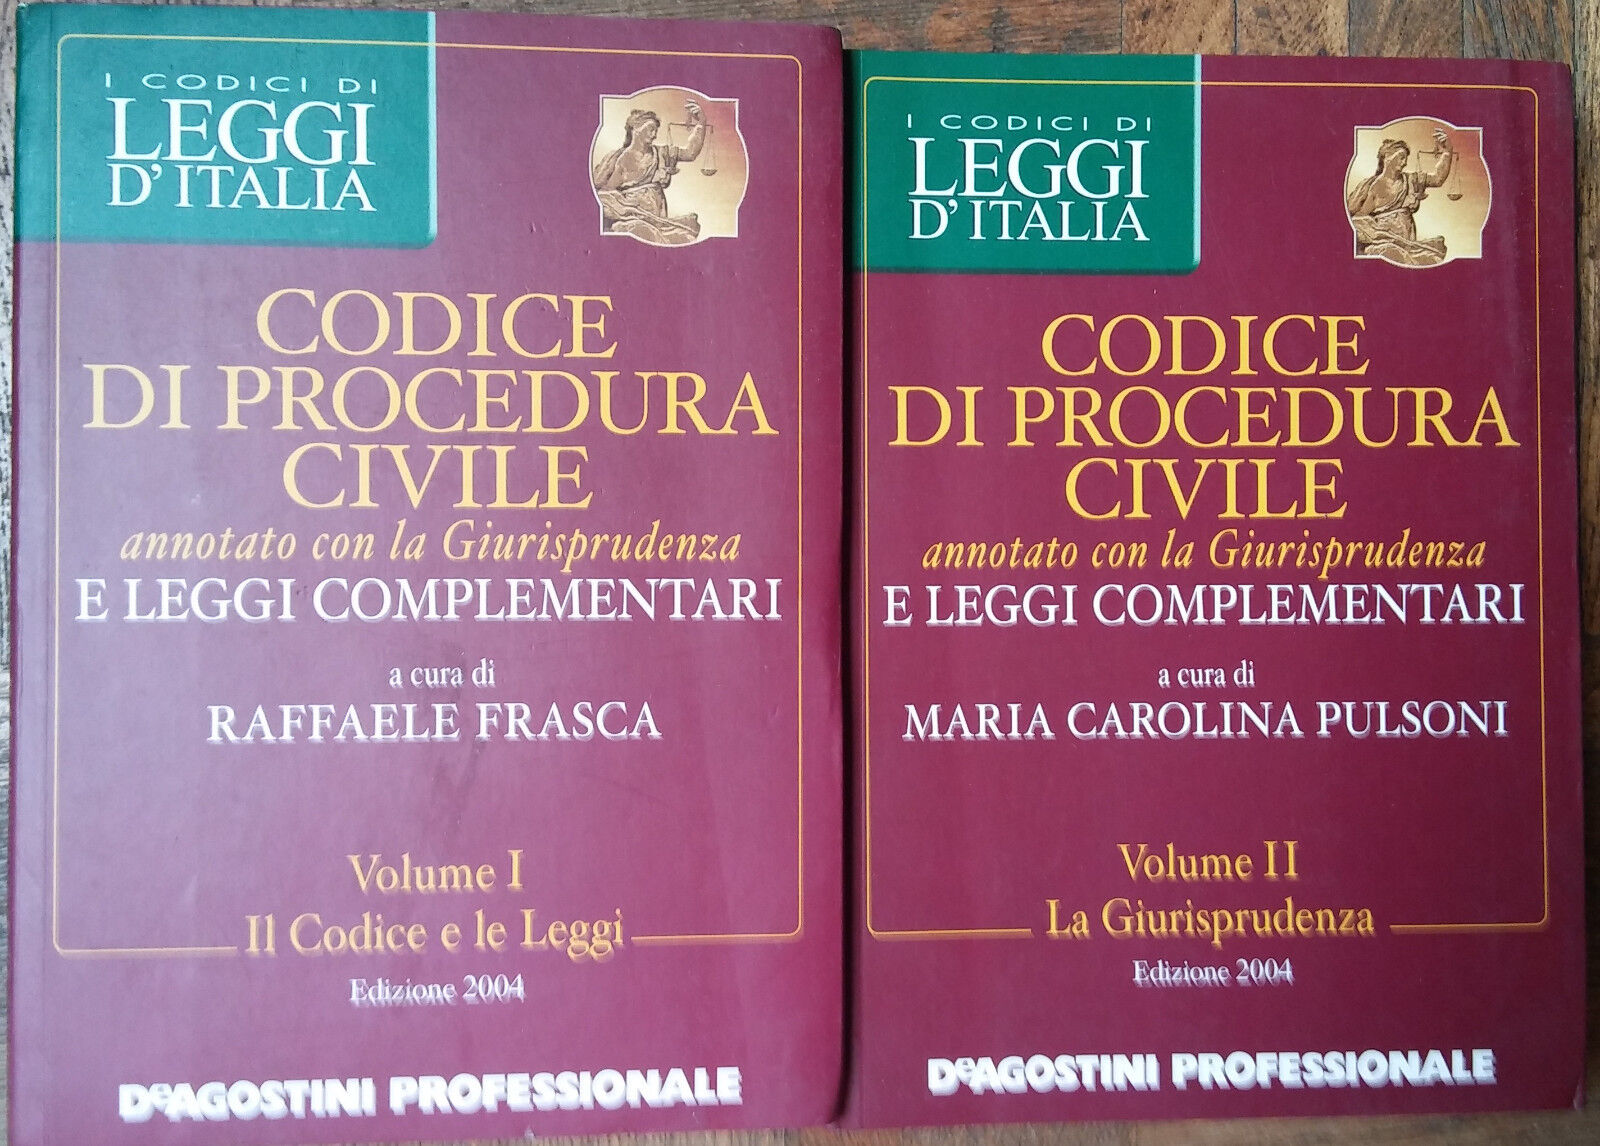 Codice di procedura civile Vol. I e II-AA.VV.-De Agostini Professionale,2004-R